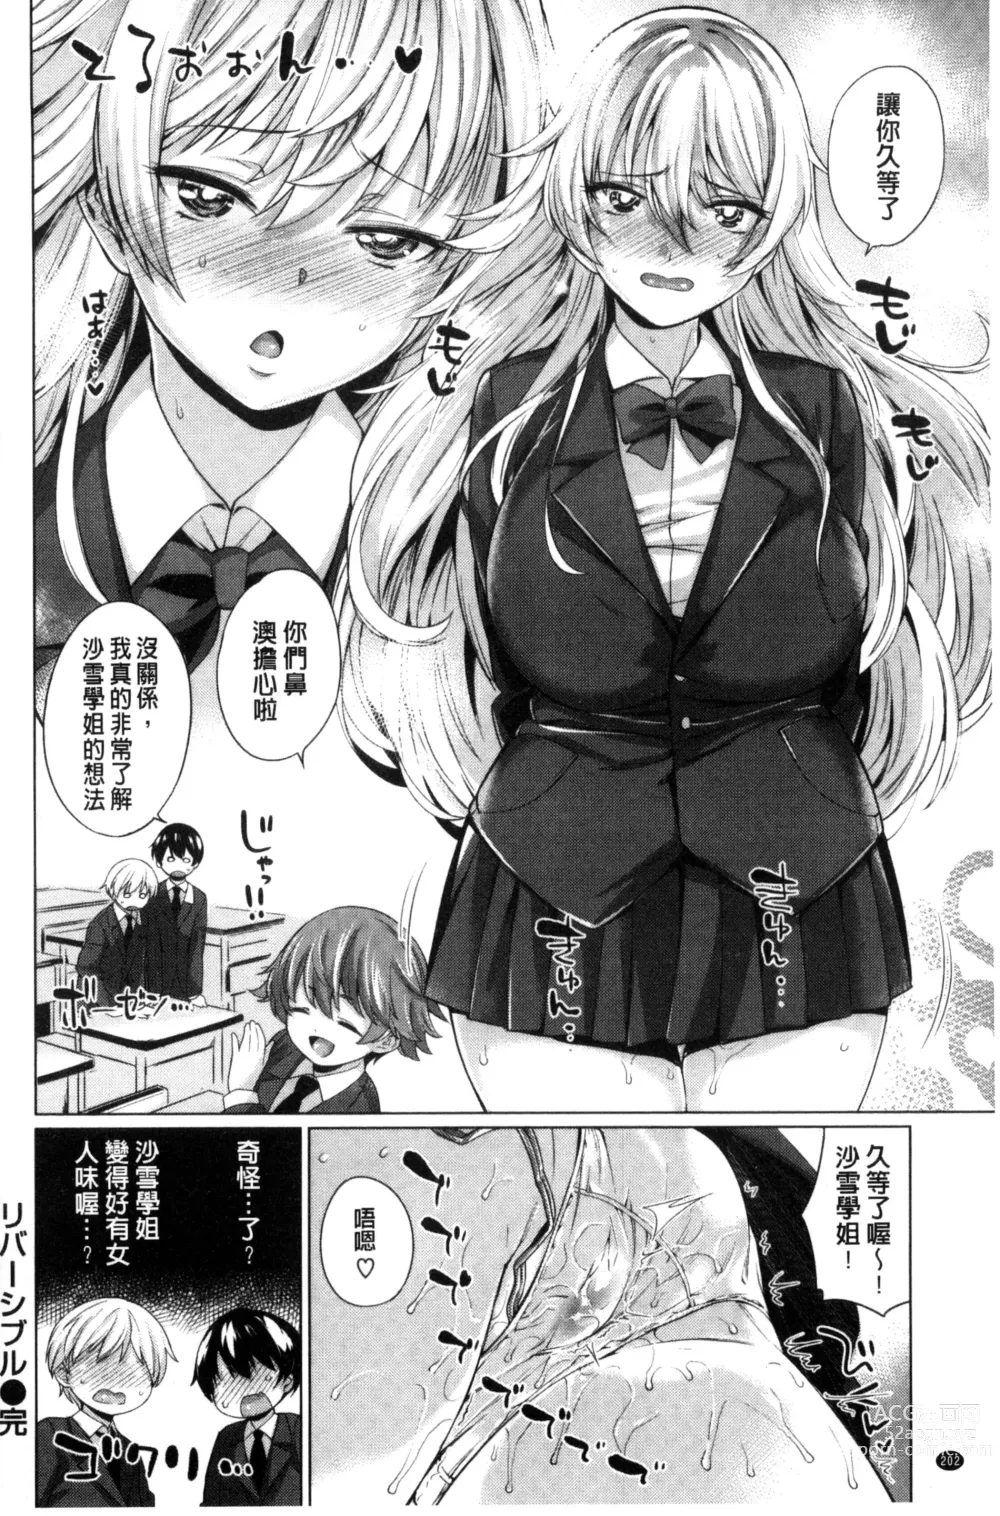 Page 208 of manga Zettai Muteki Shoujo - Cant beat me at sex!!